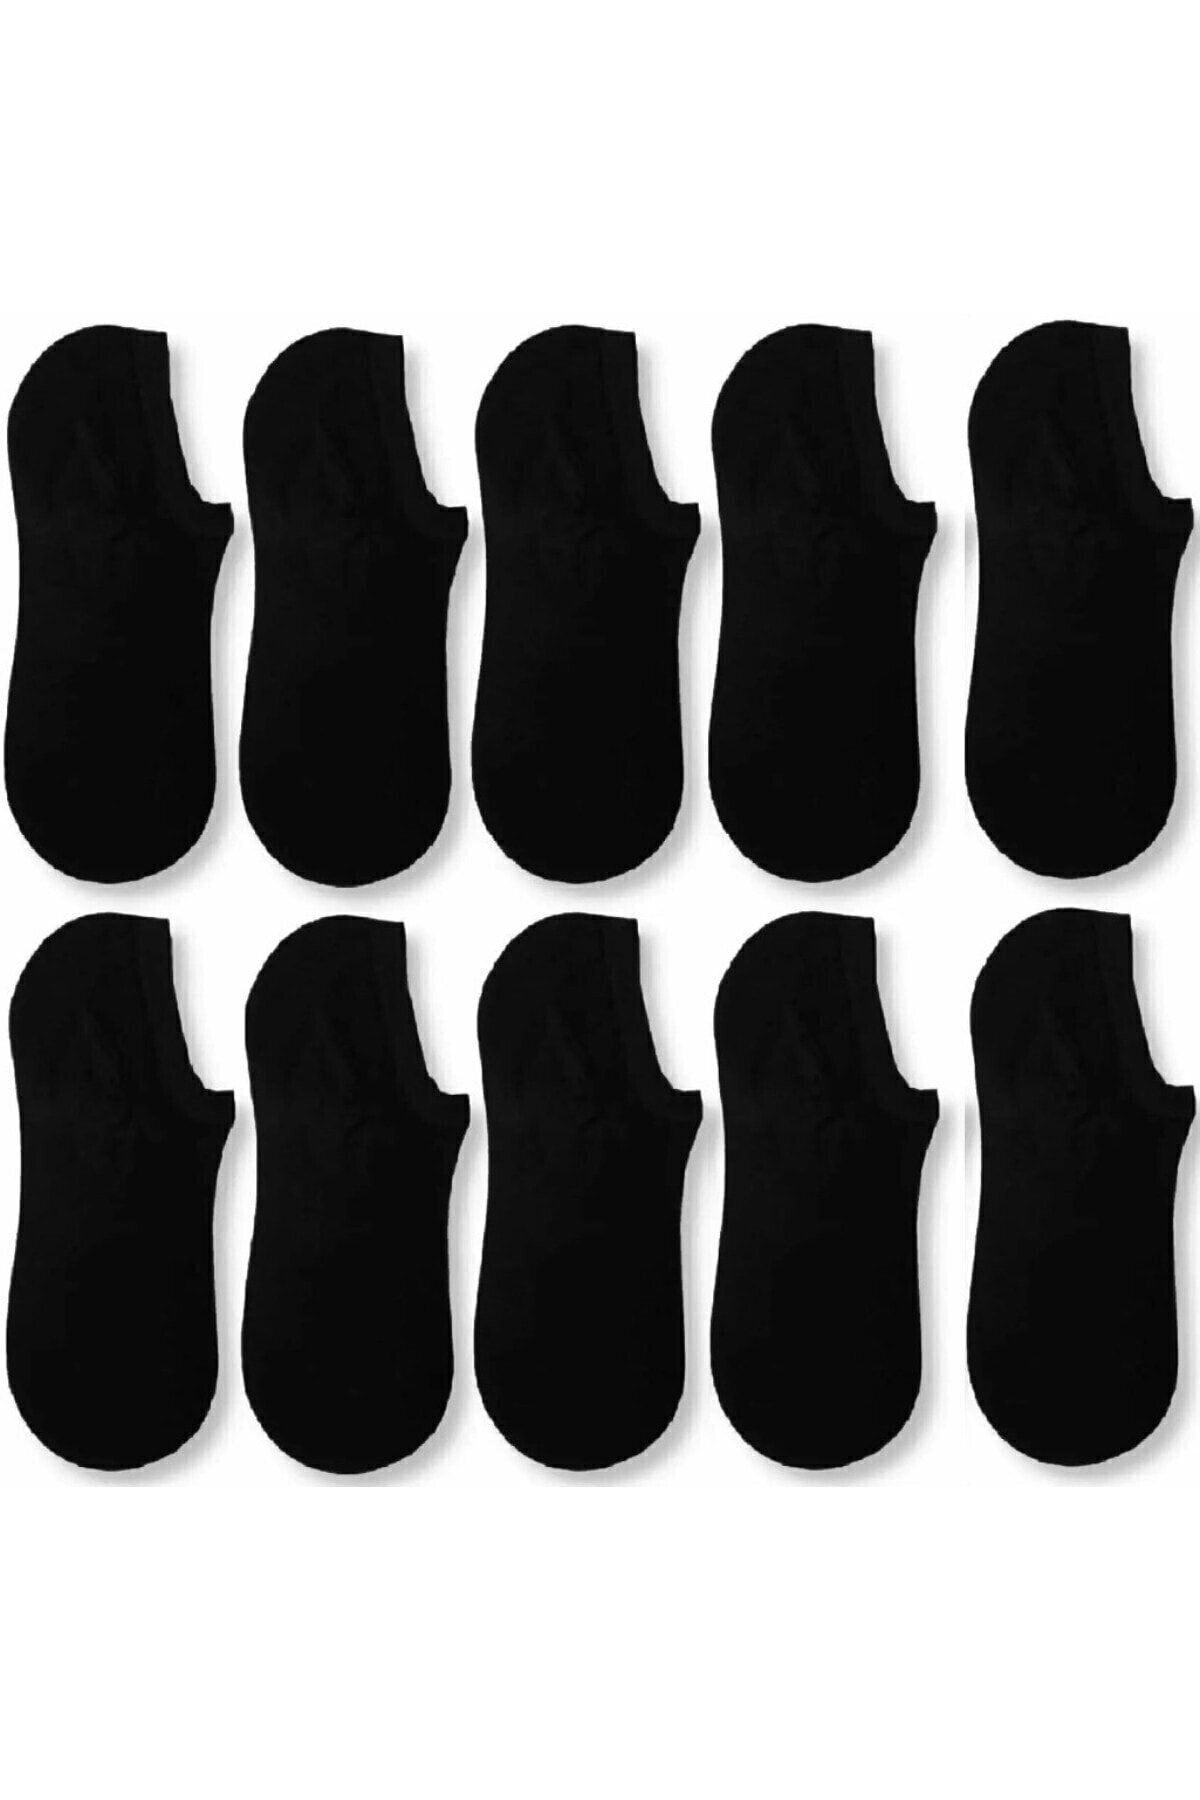 SOCKSHION 10 Çift Kadın Ve Erkek Siyah Bambu (SNEAKER) Spor Ayakkabı Çorabı Siyah